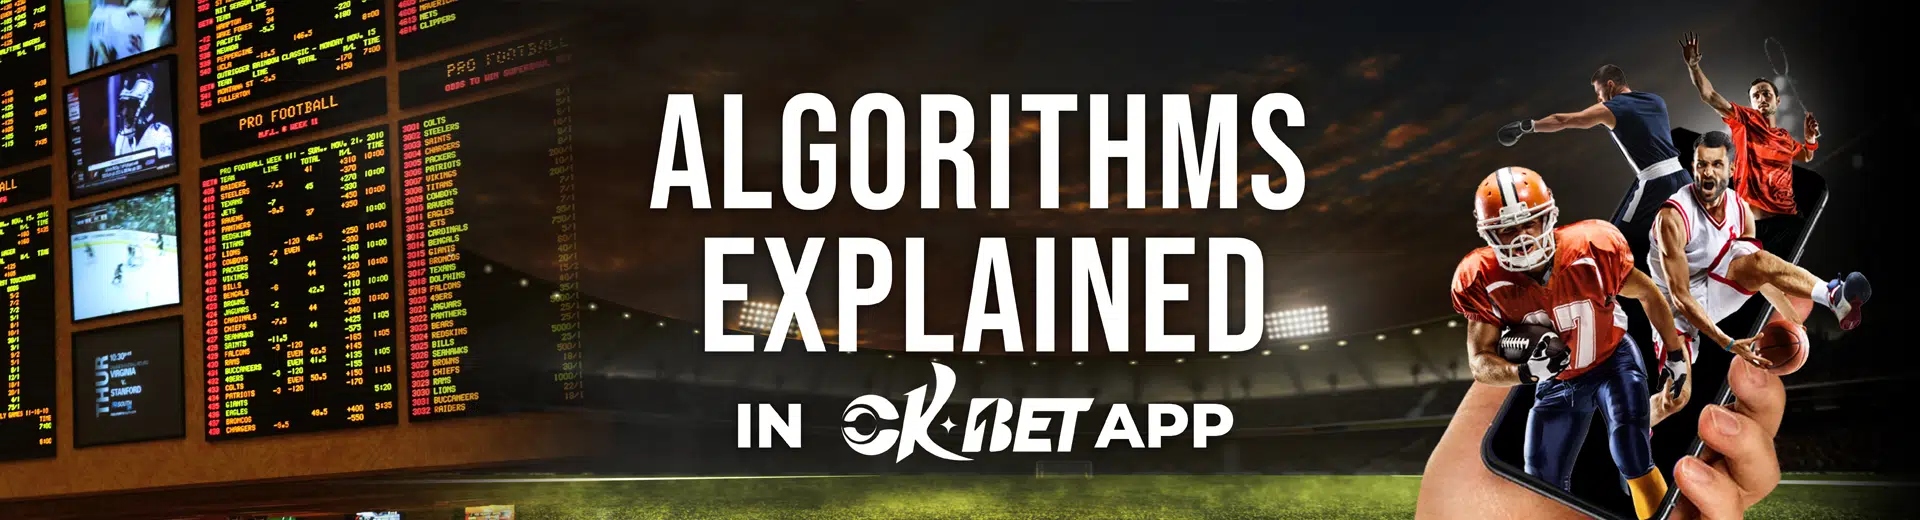 Algorithms Explained in OKBET Sports Betting - OKBET betting